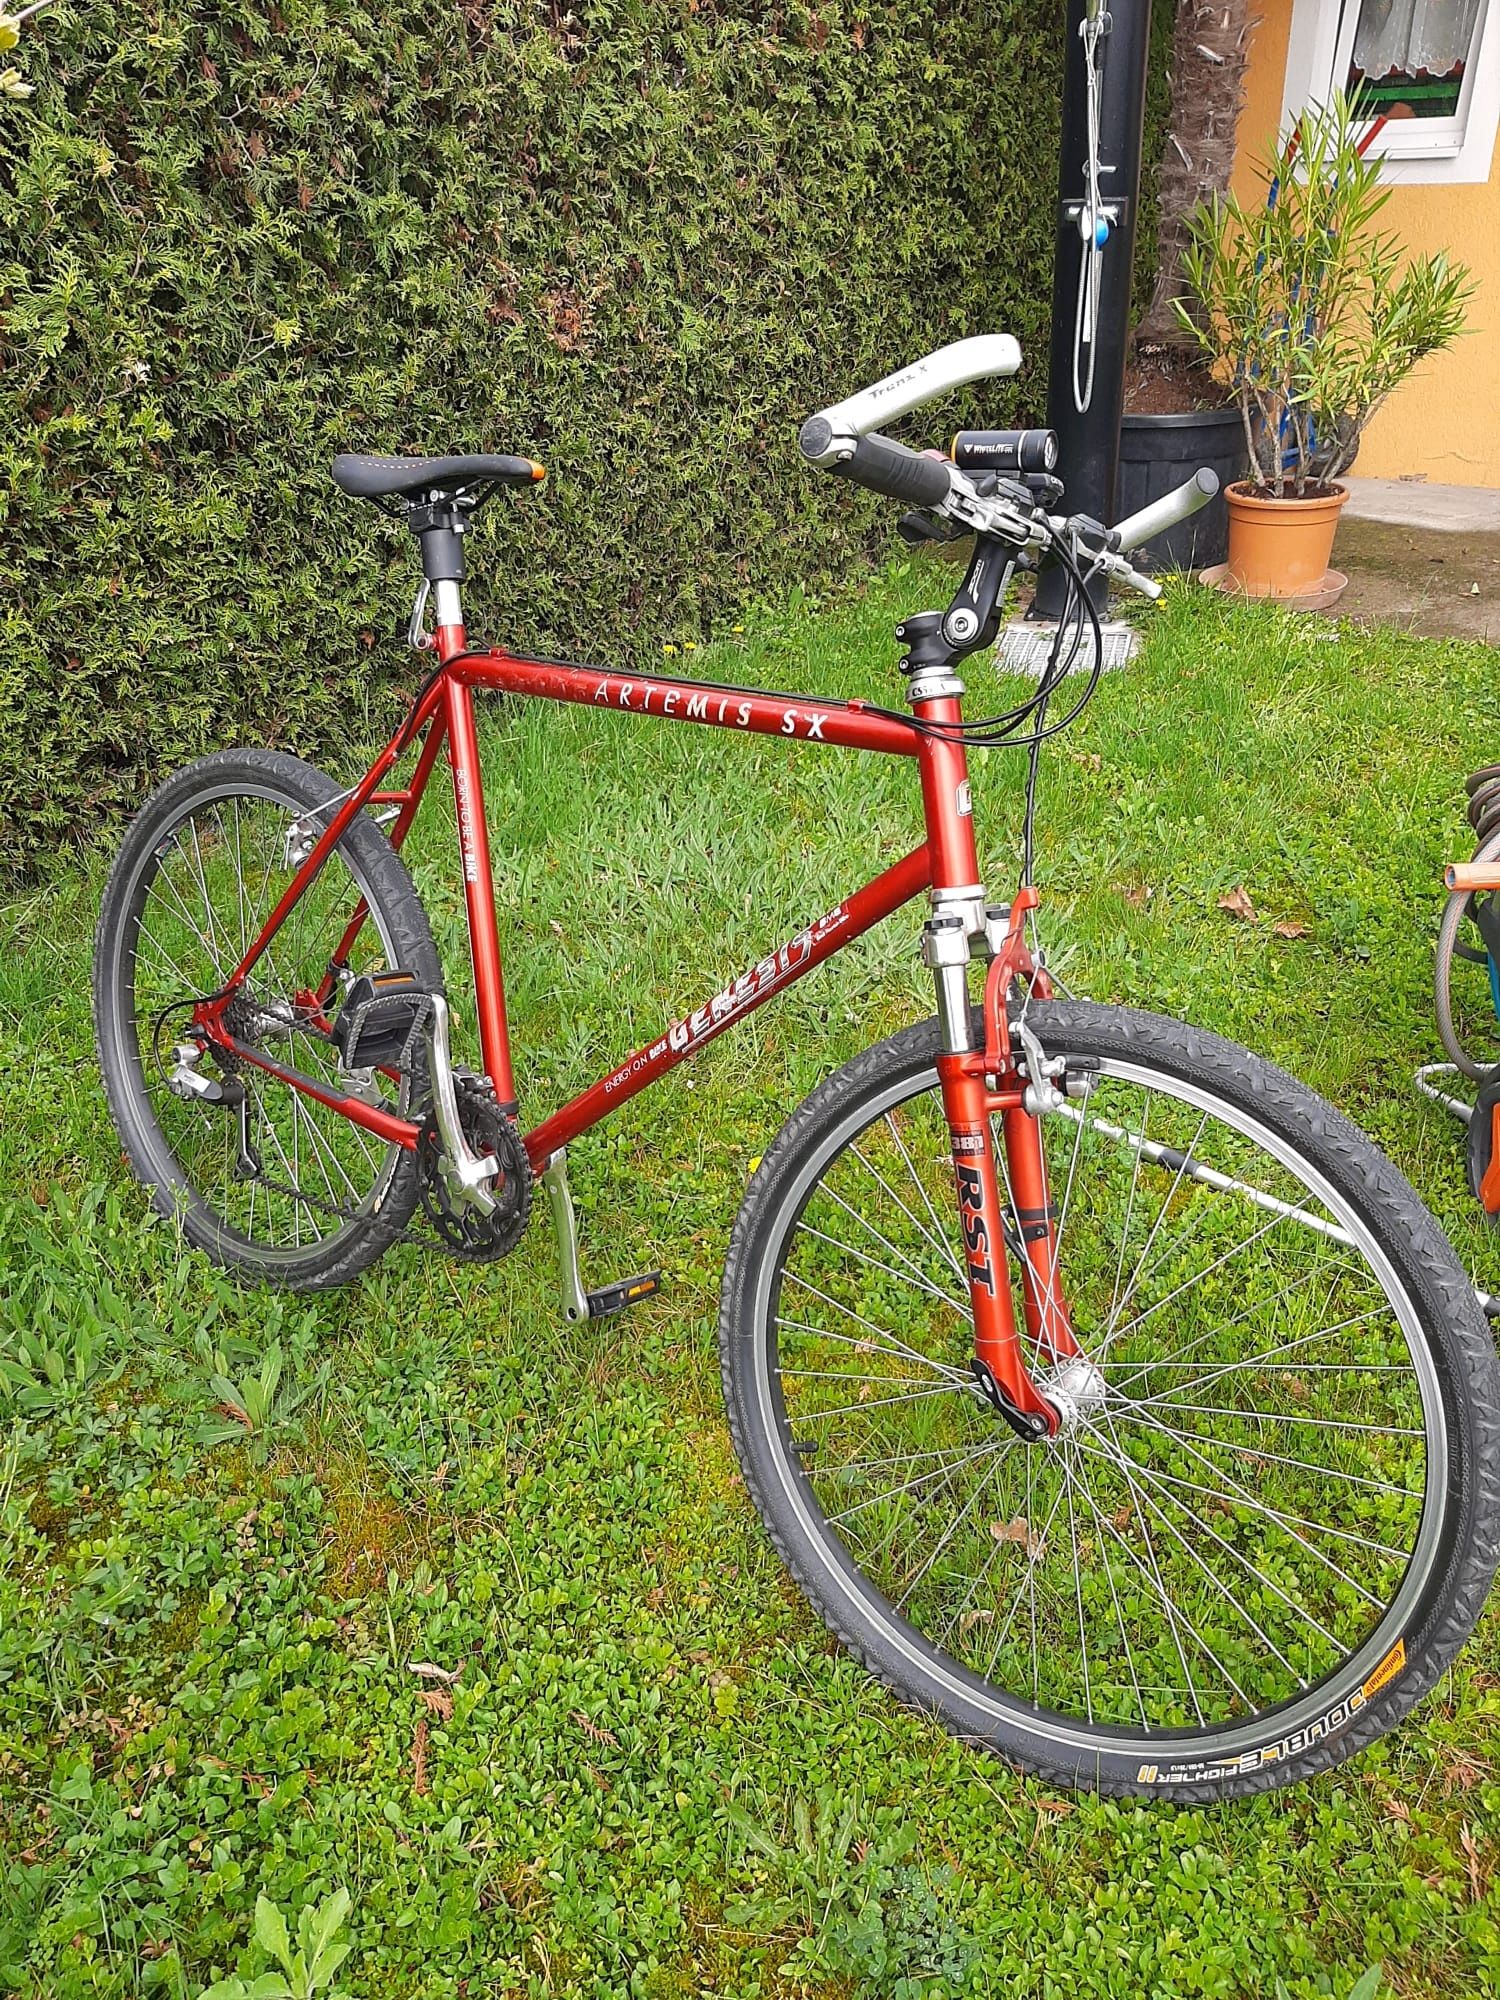 Bicicletă Genesis Artemis XS (roți 26 inch)